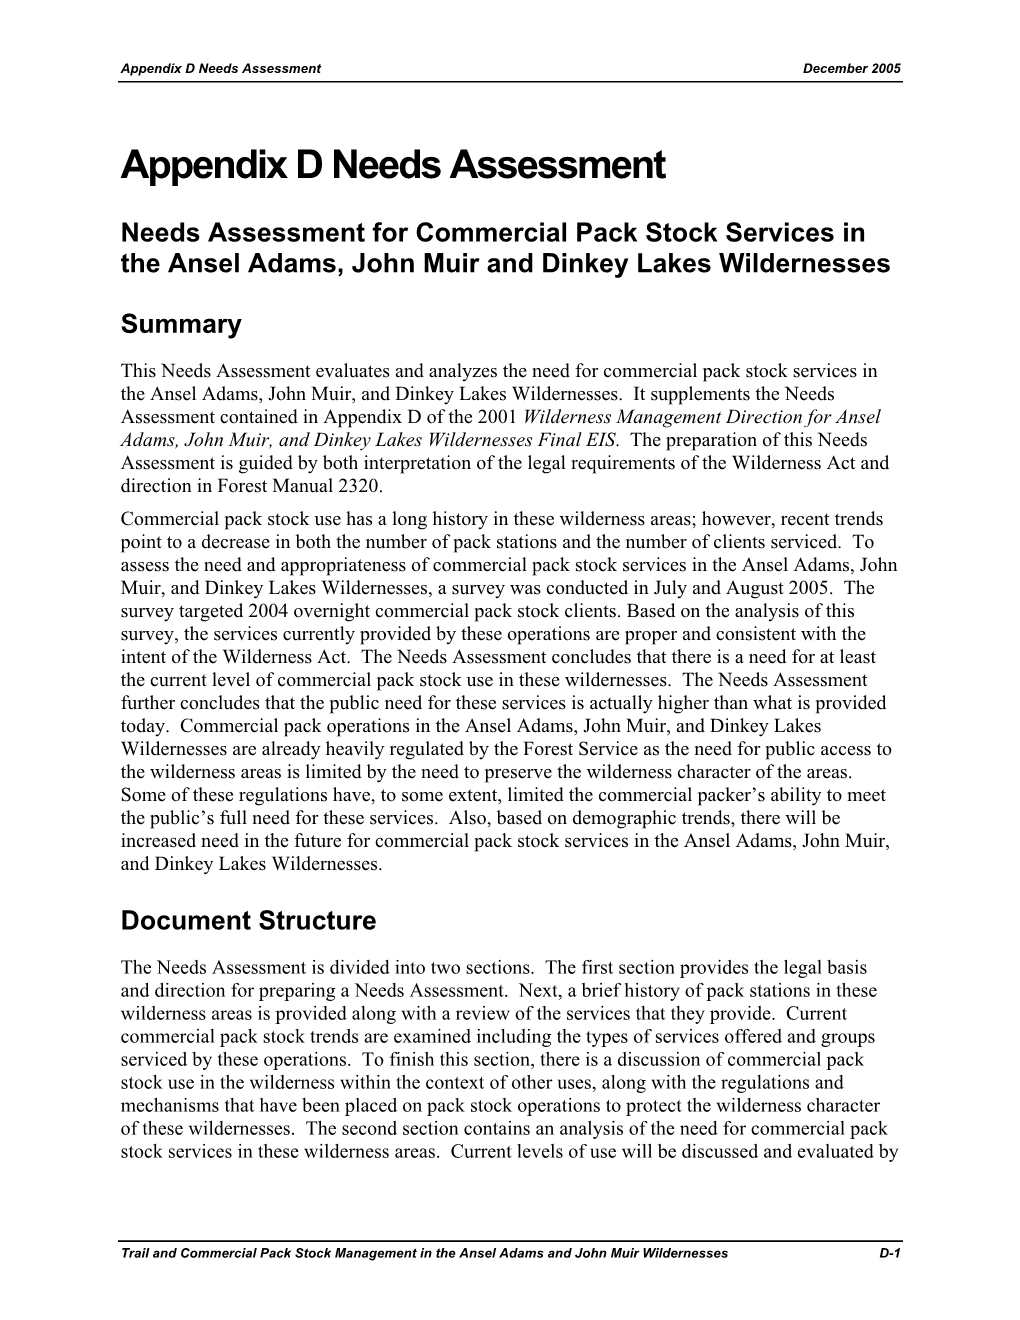 Needs Assessment December 2005